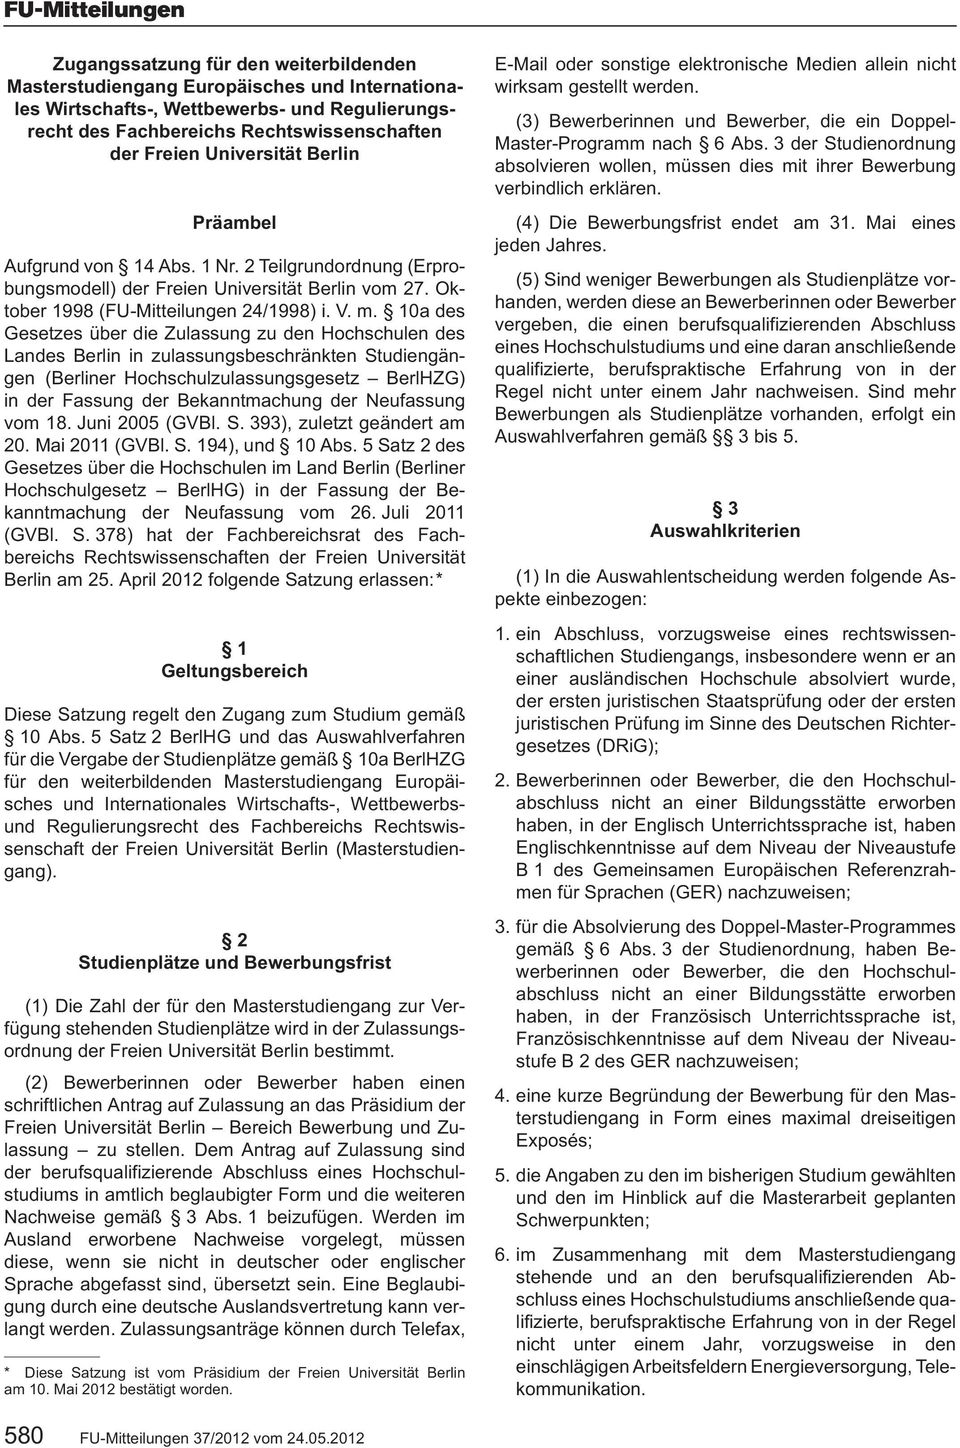 10a des Gesetzes über die Zulassung zu den Hochschulen des Landes Berlin in zulassungsbeschränkten Studiengängen (Berliner Hochschulzulassungsgesetz BerlHZG) in der Fassung der Bekanntmachung der